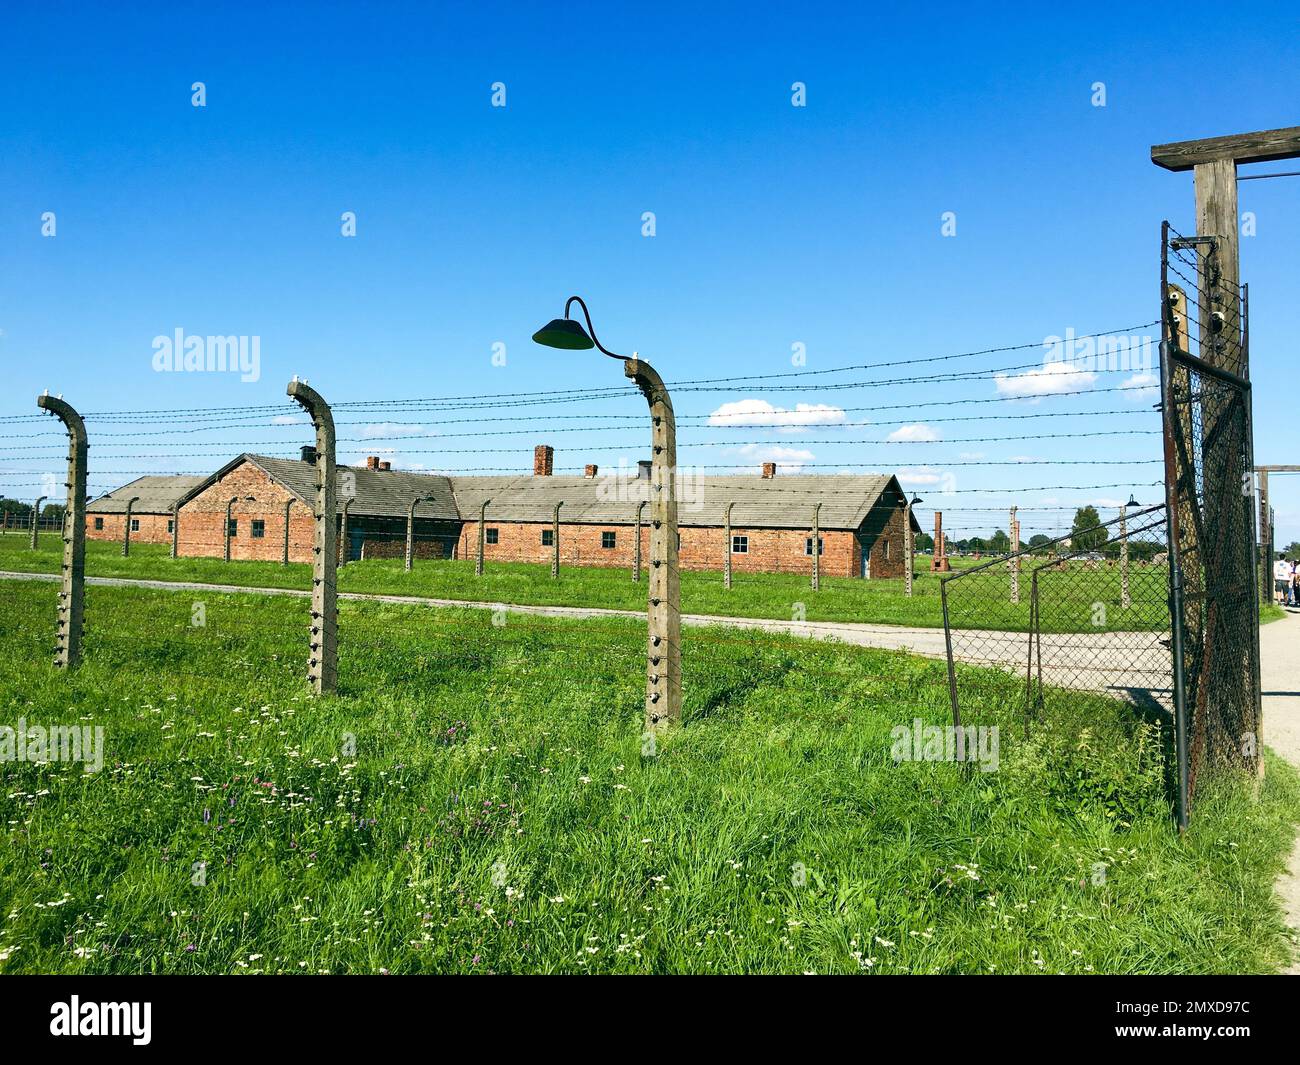 A KL Auschwitz, le plus grand des camps de concentration et des centres d'extermination allemands nazis Banque D'Images